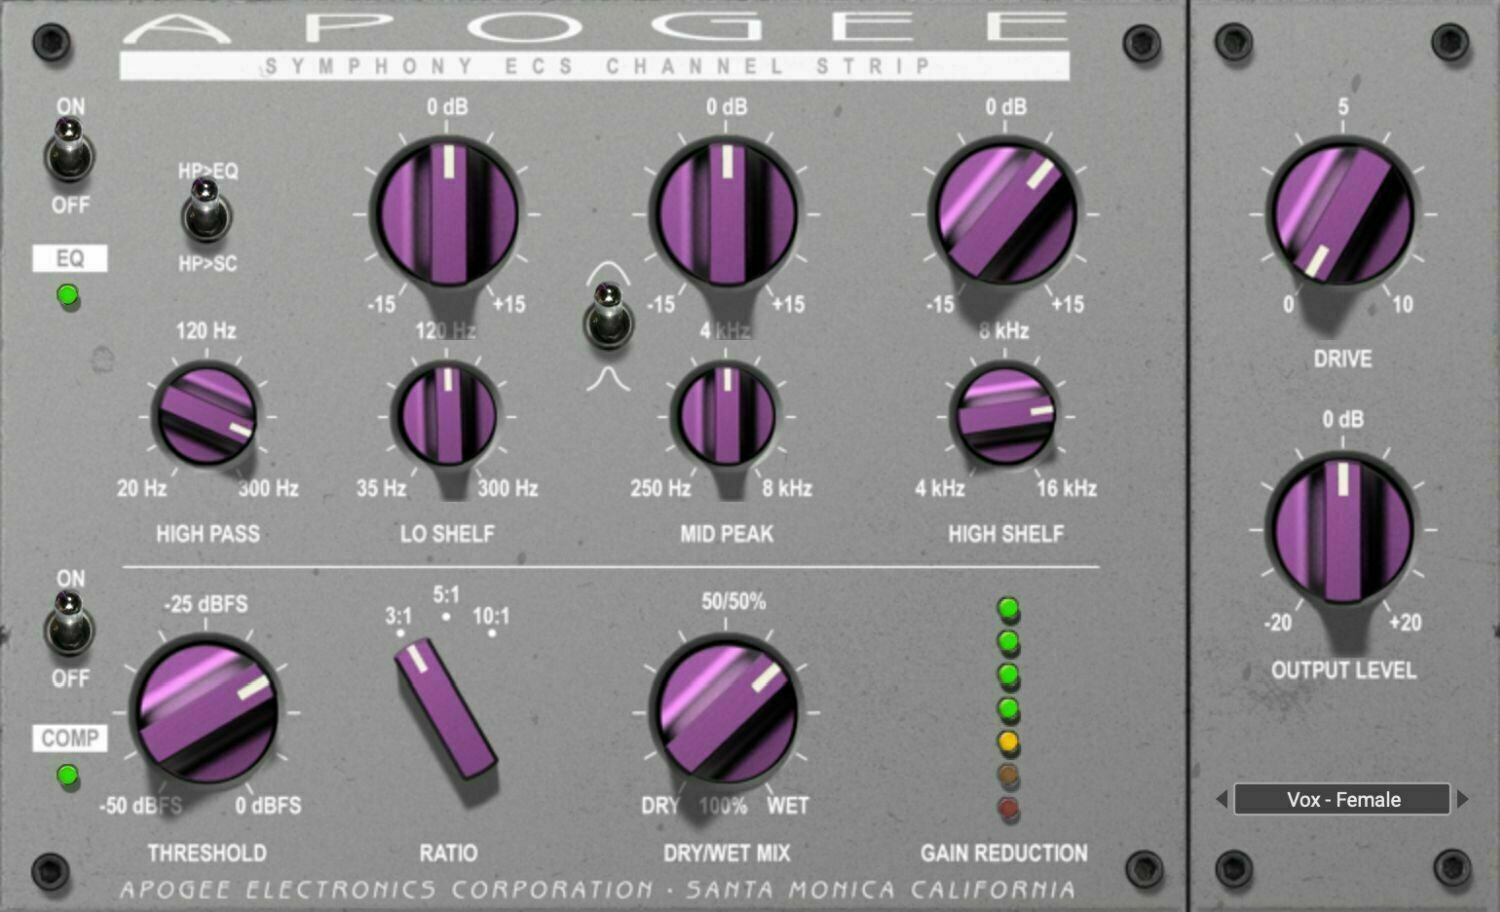 Studiový softwarový Plug-In efekt Apogee FX Rack Symphony ECS Channel Strip (Digitální produkt)